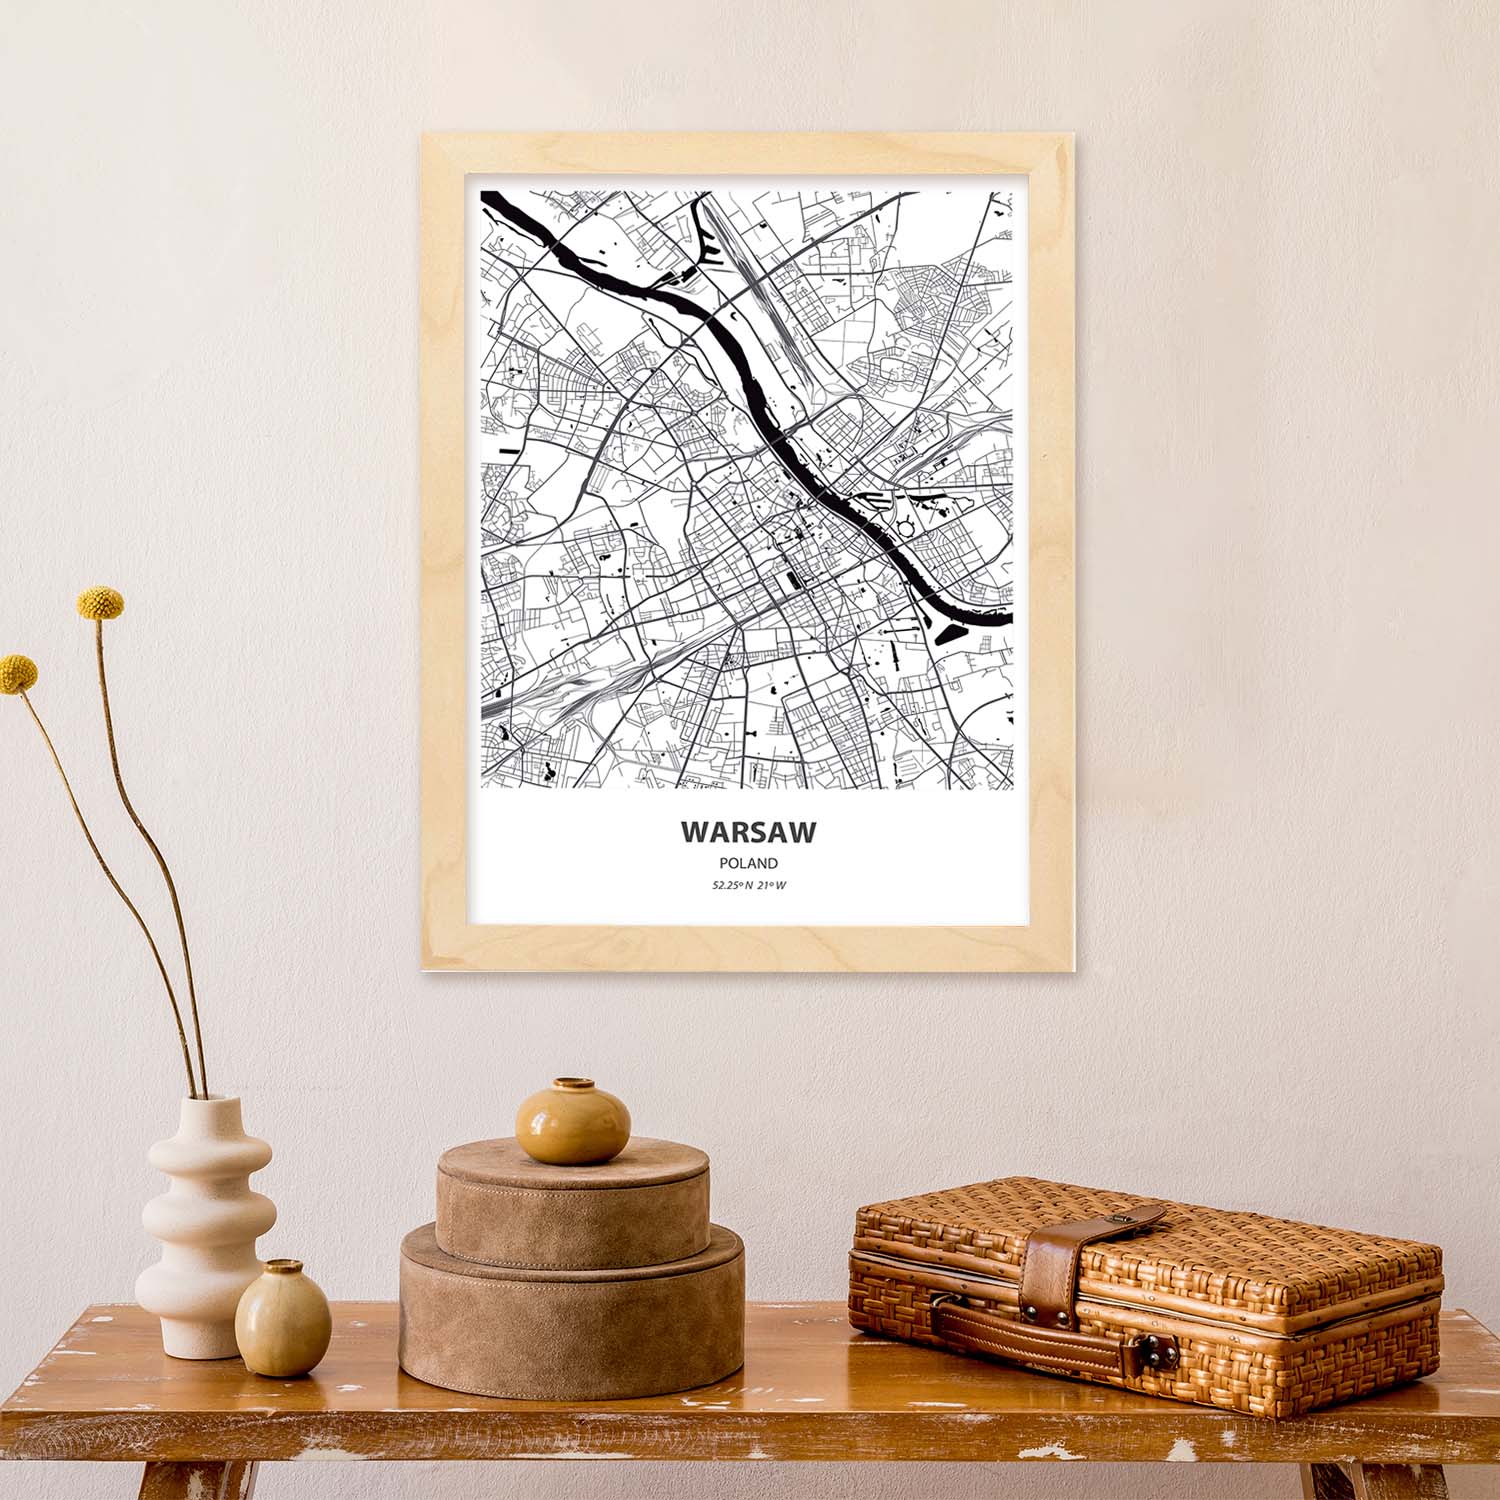 Poster con mapa de Warsaw - Polonia. Láminas de ciudades de Europa con mares y ríos en color negro.-Artwork-Nacnic-Nacnic Estudio SL